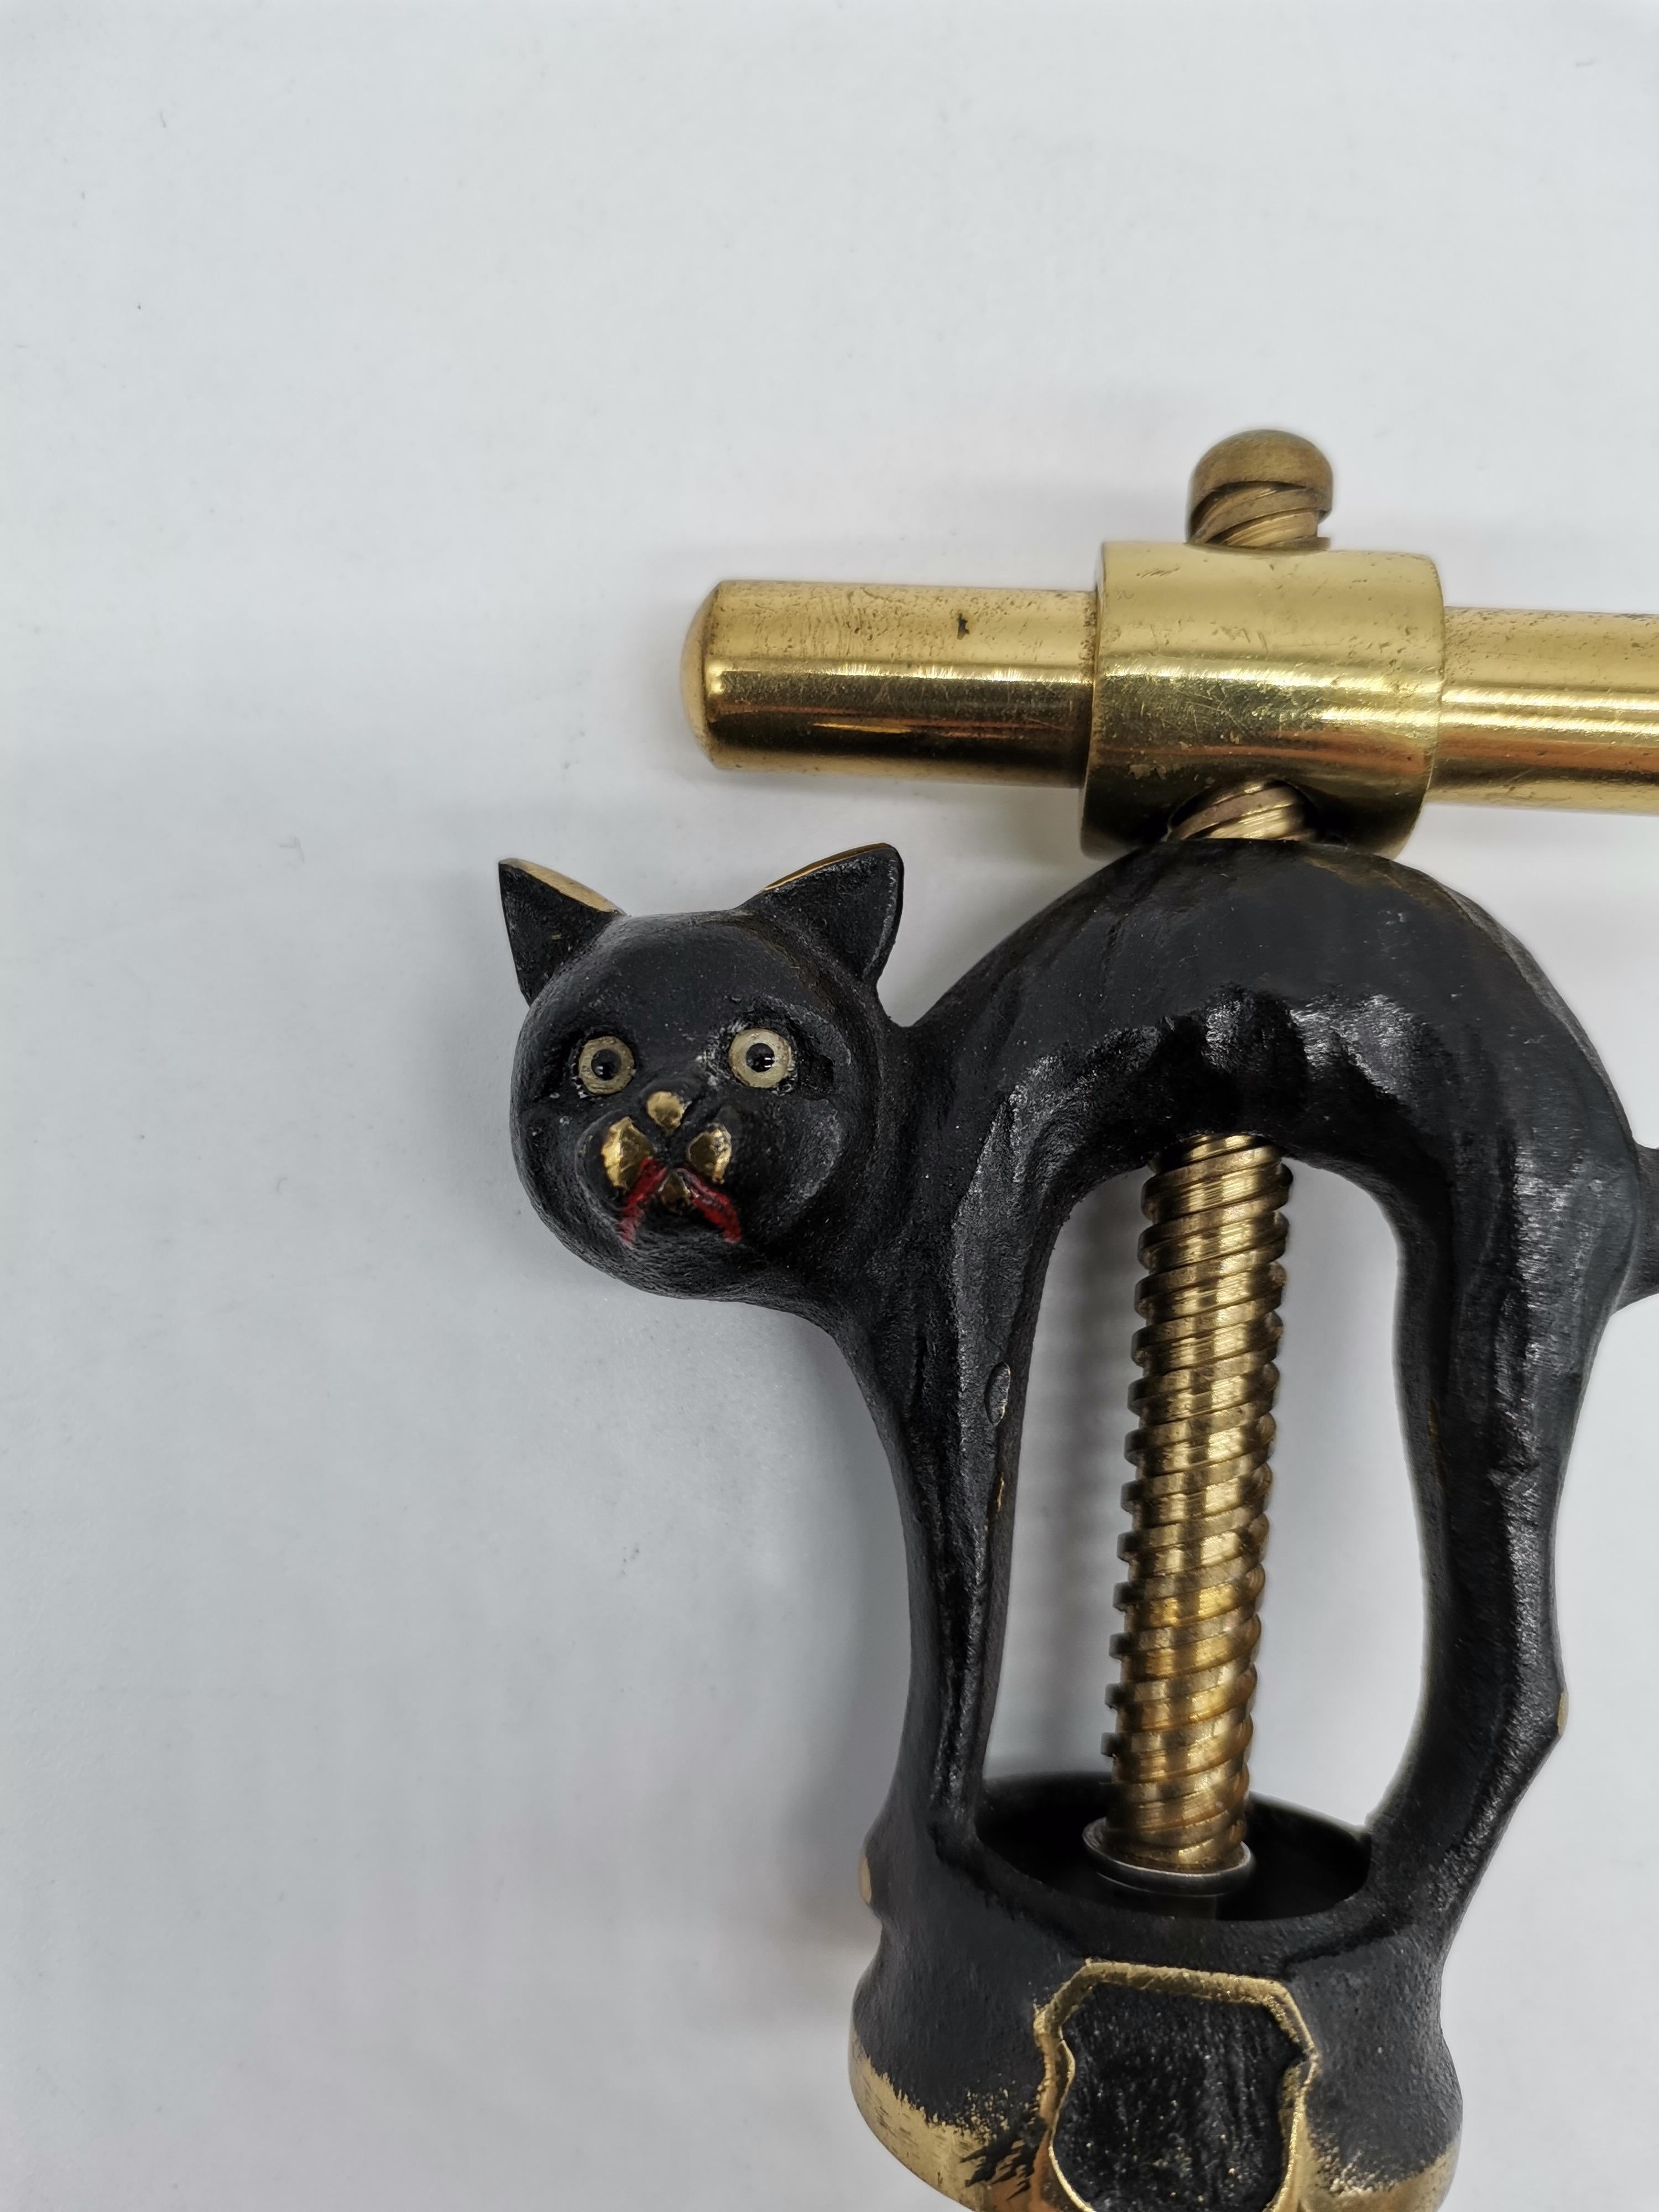 Ein Korkenzieher in Form einer Katze von Walter Bosse aus teilweise geschwärztem Messing.
  